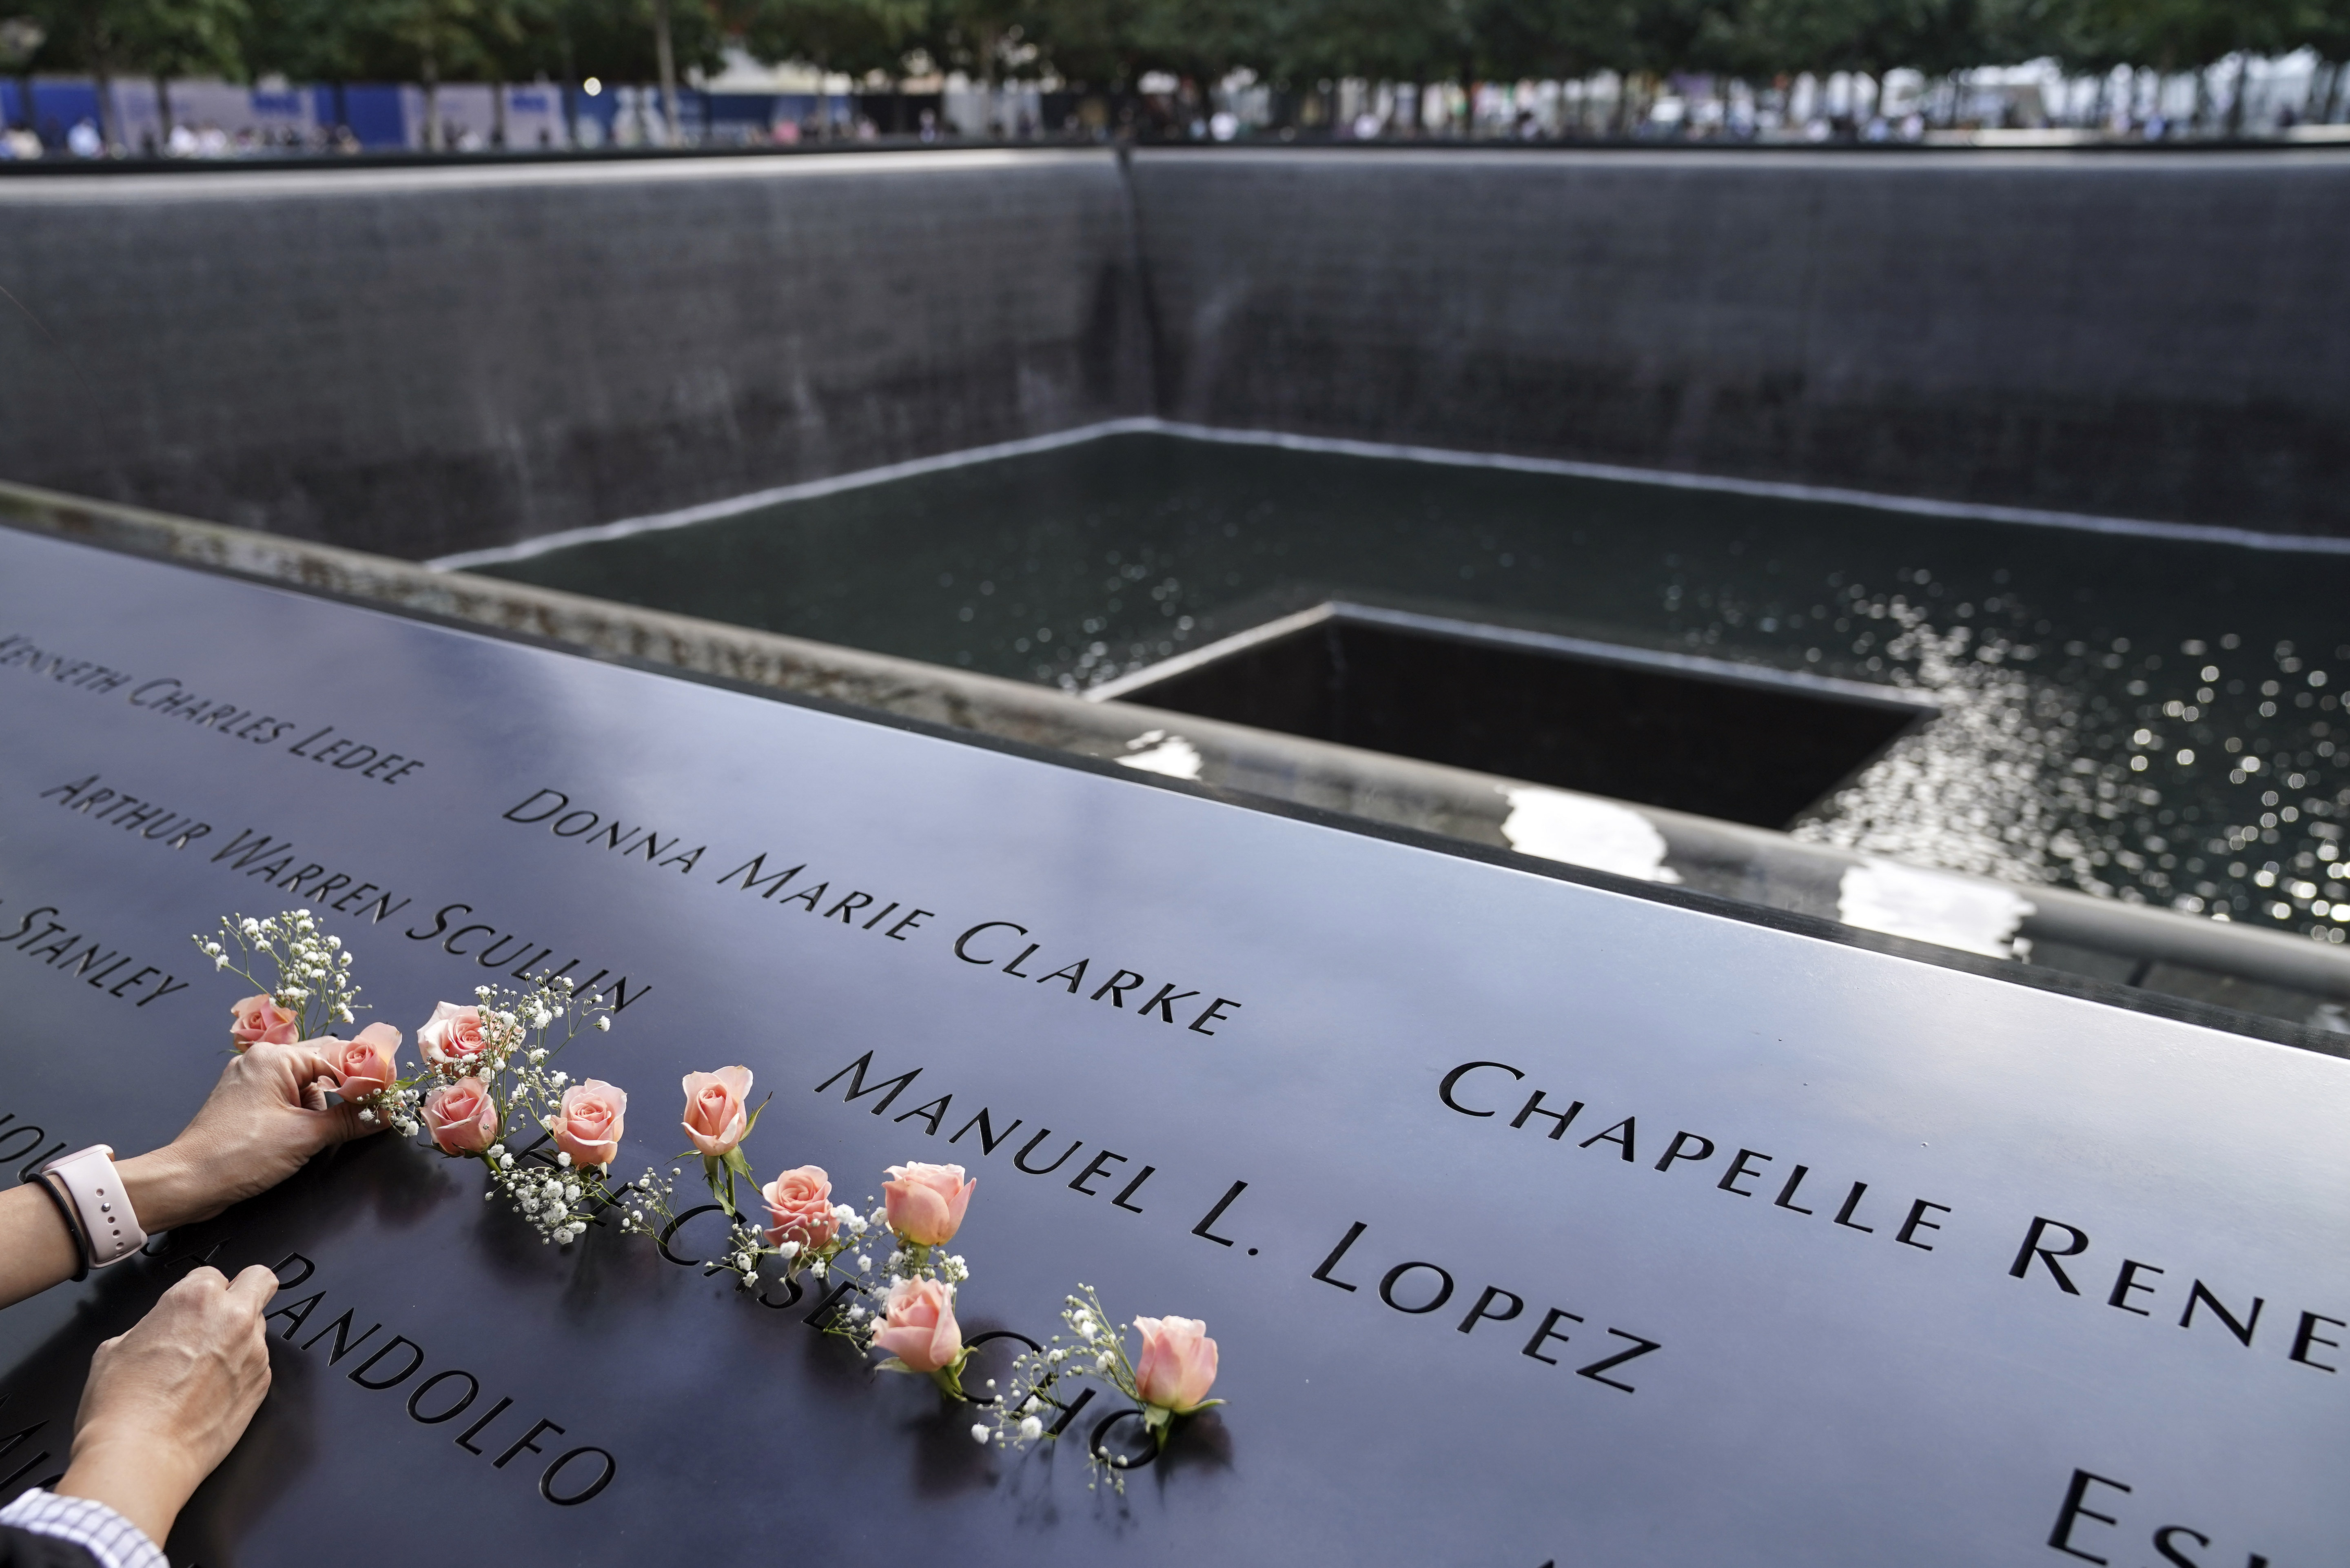 Память 9 11. Башни Близнецы 11 сентября мемориал. Мемориал 9/11 в Нью-Йорке. Мемориал памяти 11 сентября в Нью-Йорке. Мемориал 9 11 США.